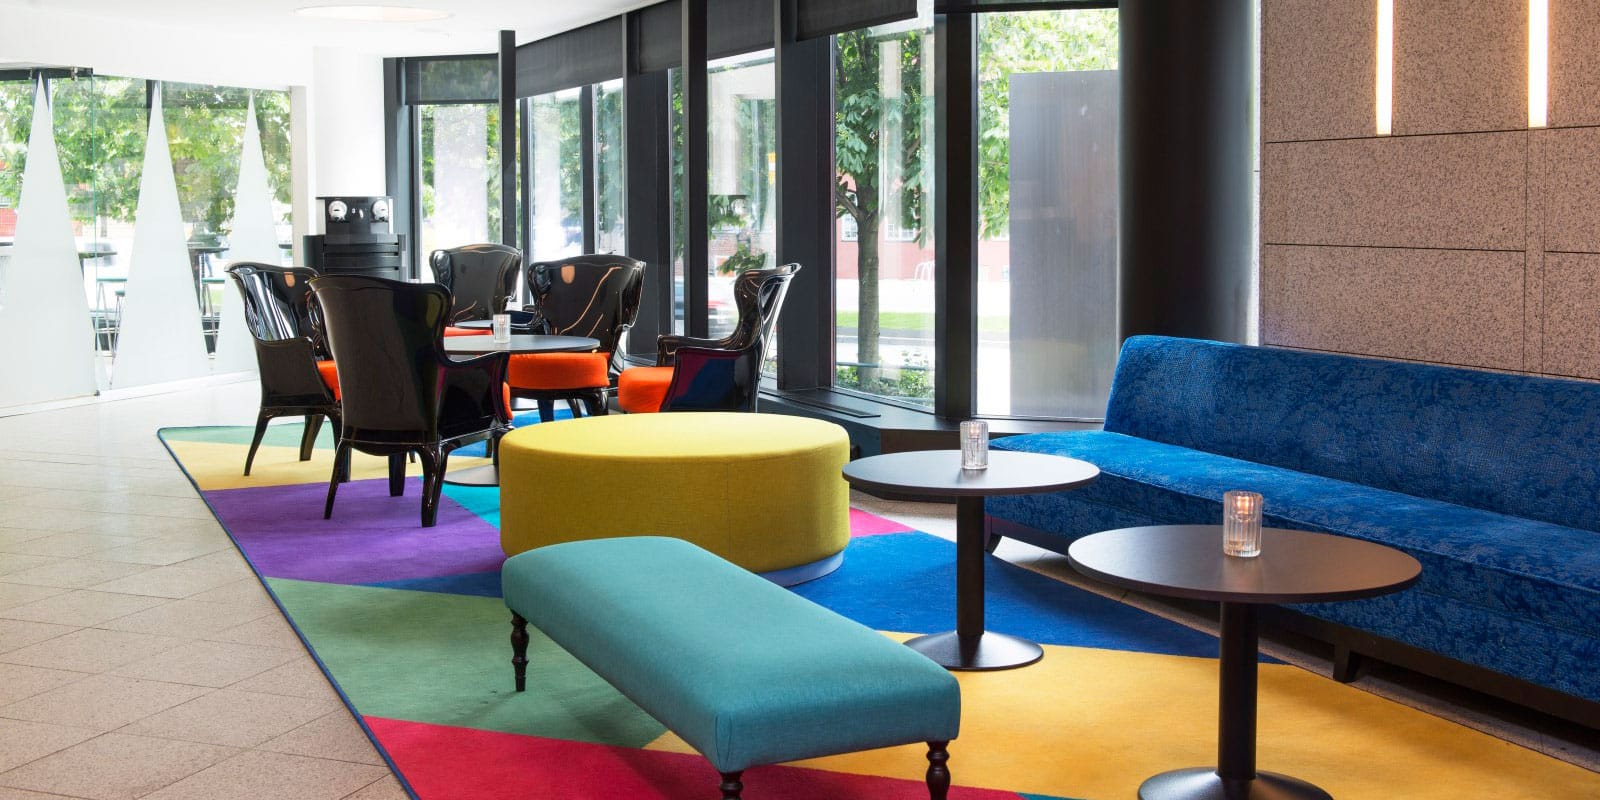 lobbyområde med sofa, sitteplasser og kafébord ved inngangsparti, fargerikt